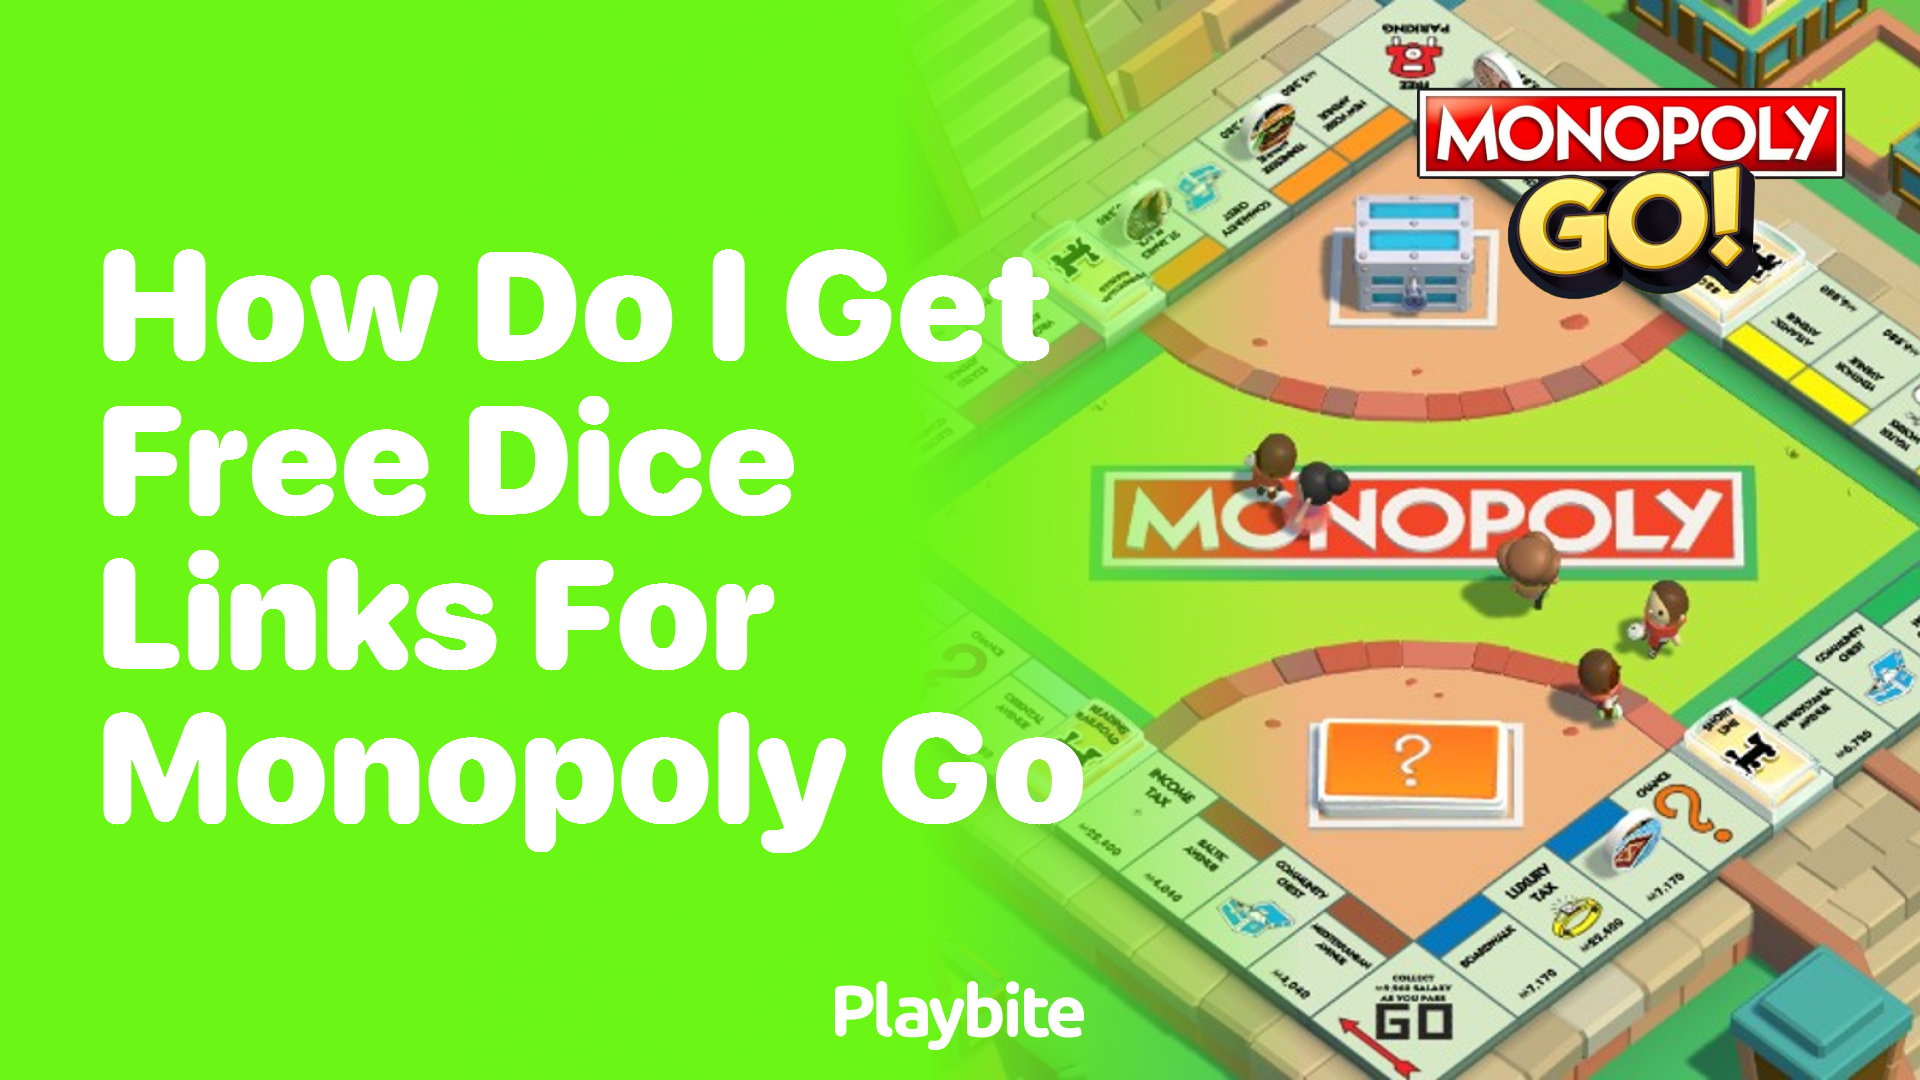 How Do I Get Free Dice Links for Monopoly Go?